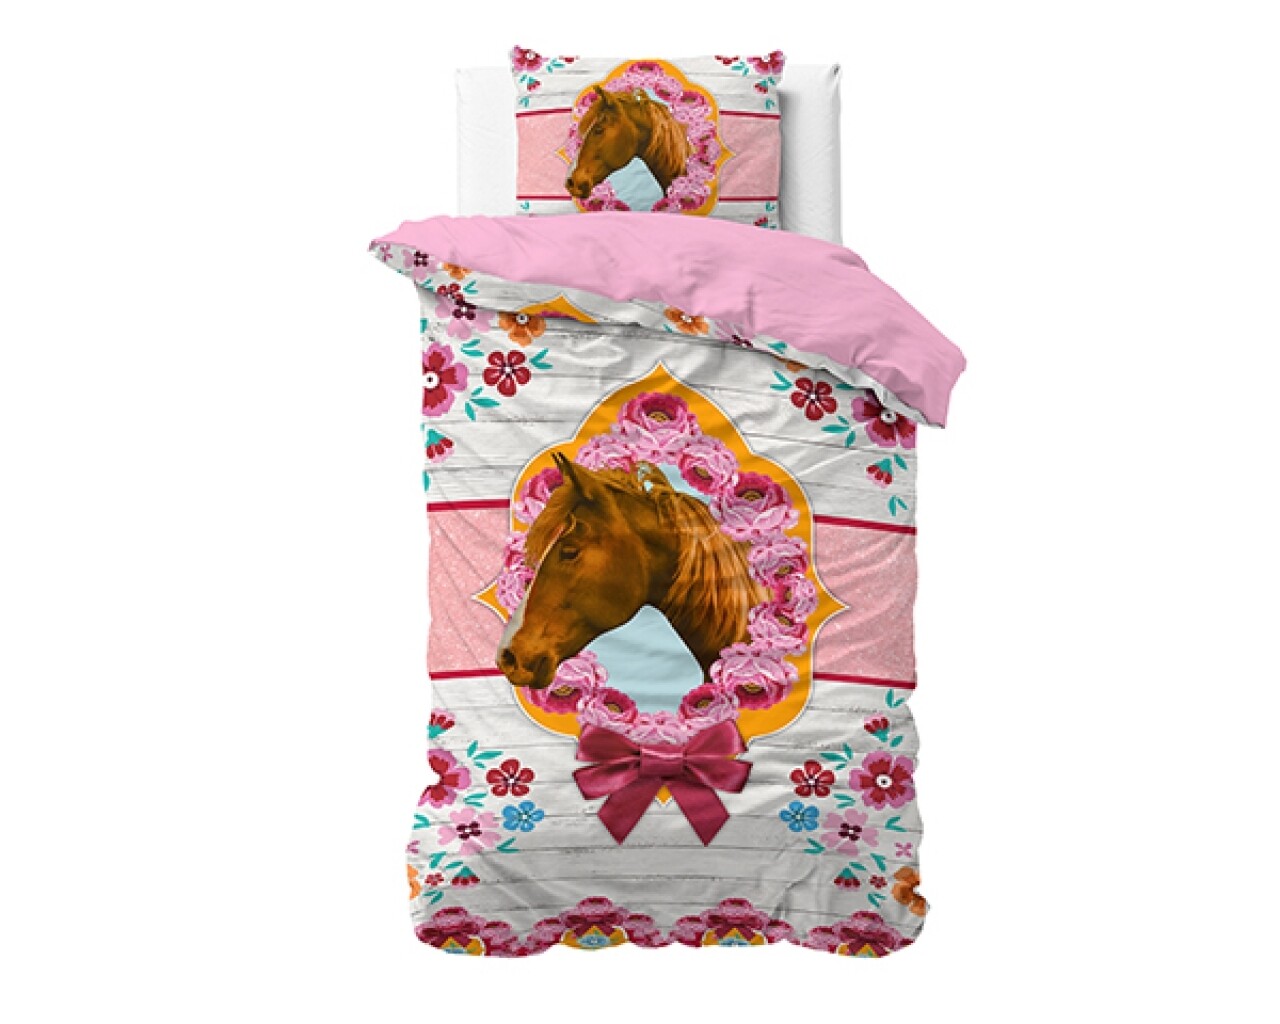 Lenjerie De Pat Pentru O Persoana, Cute Horse Pink, Dreamhouse, 2 Piese, 140x200 Cm, 100% Bumbac, Multicolora